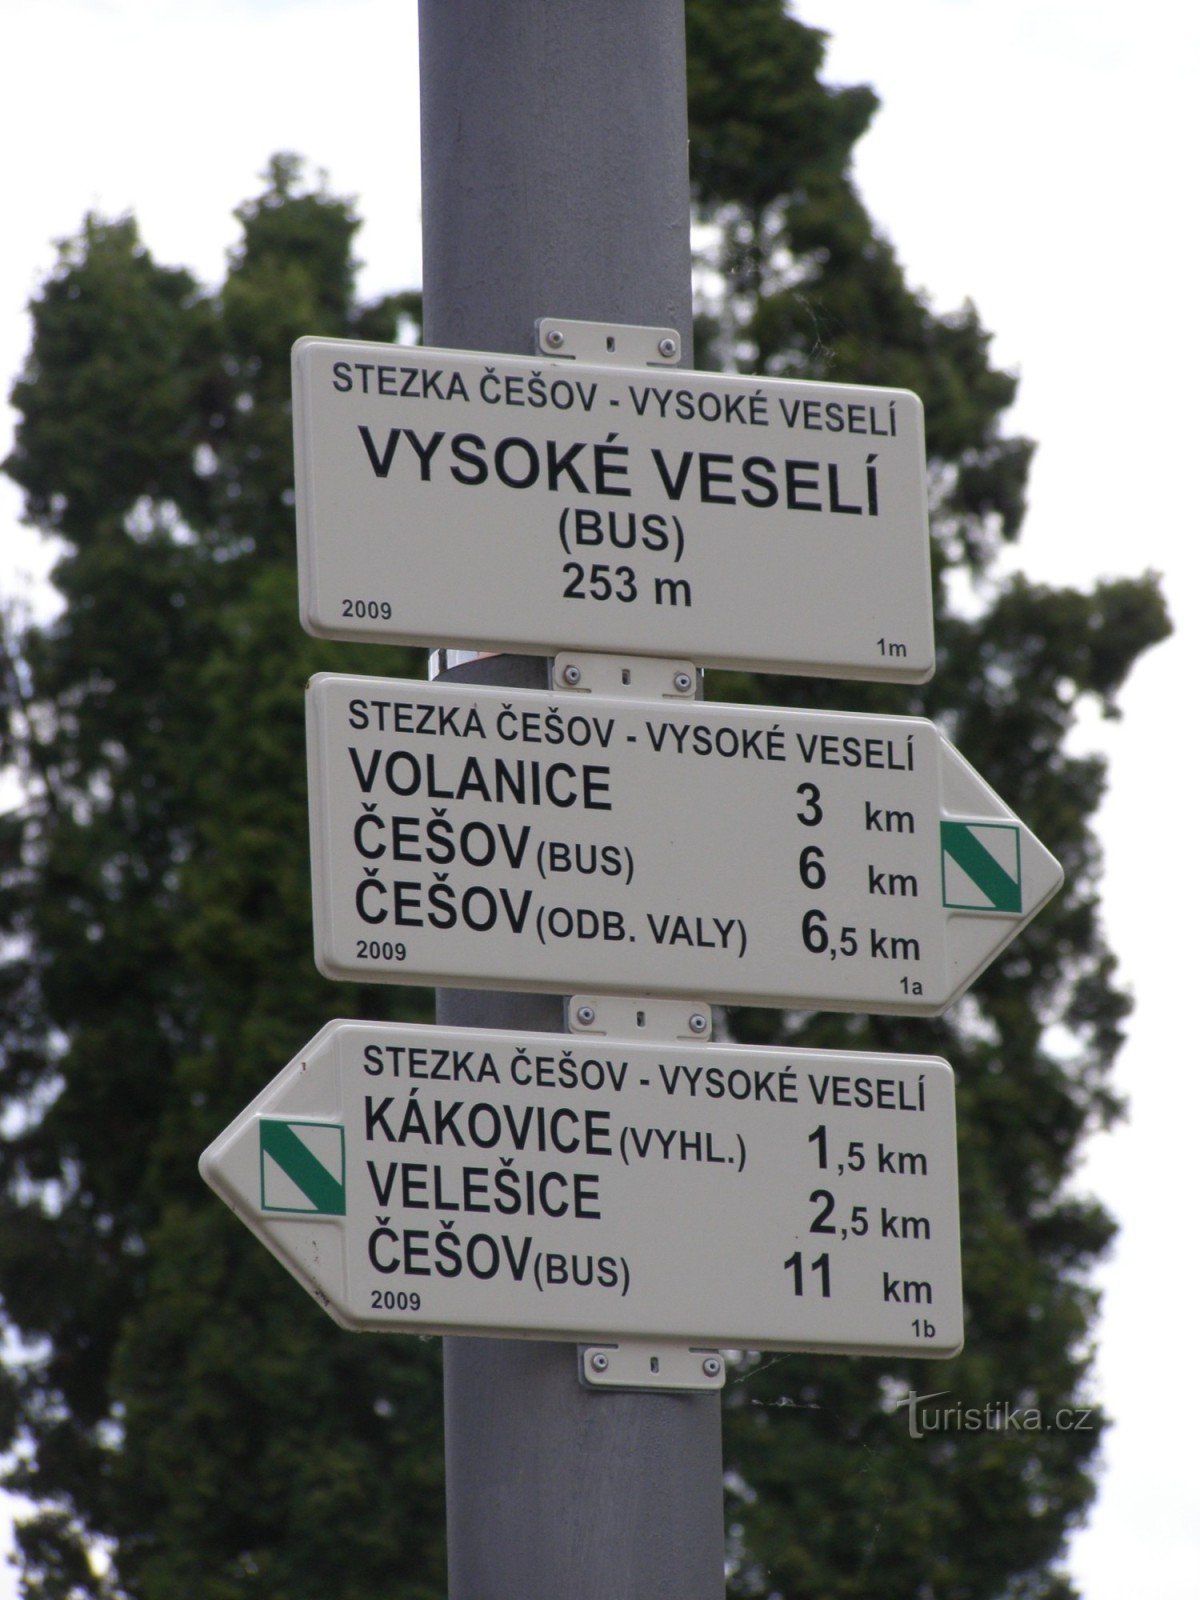 traversare cu autobuzul NS Češov-Vysoké Veselí - Vysoké Veselí